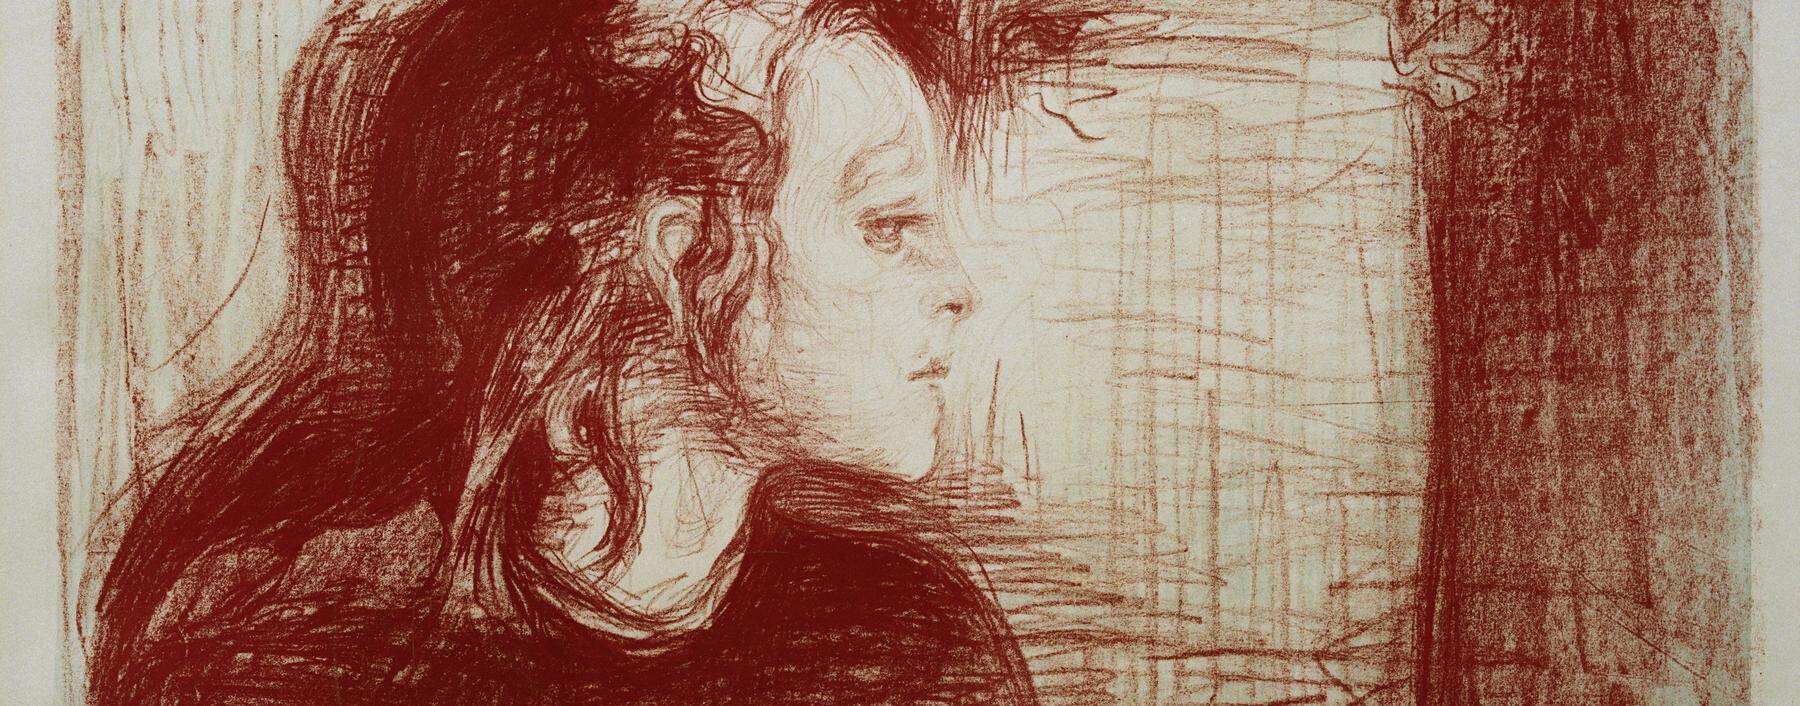 „Ich versuche, aus der Not eine Tugend zu machen, ich versuche, übersehen zu werden.“ Edvard Munch, Lithografie, 1896. 